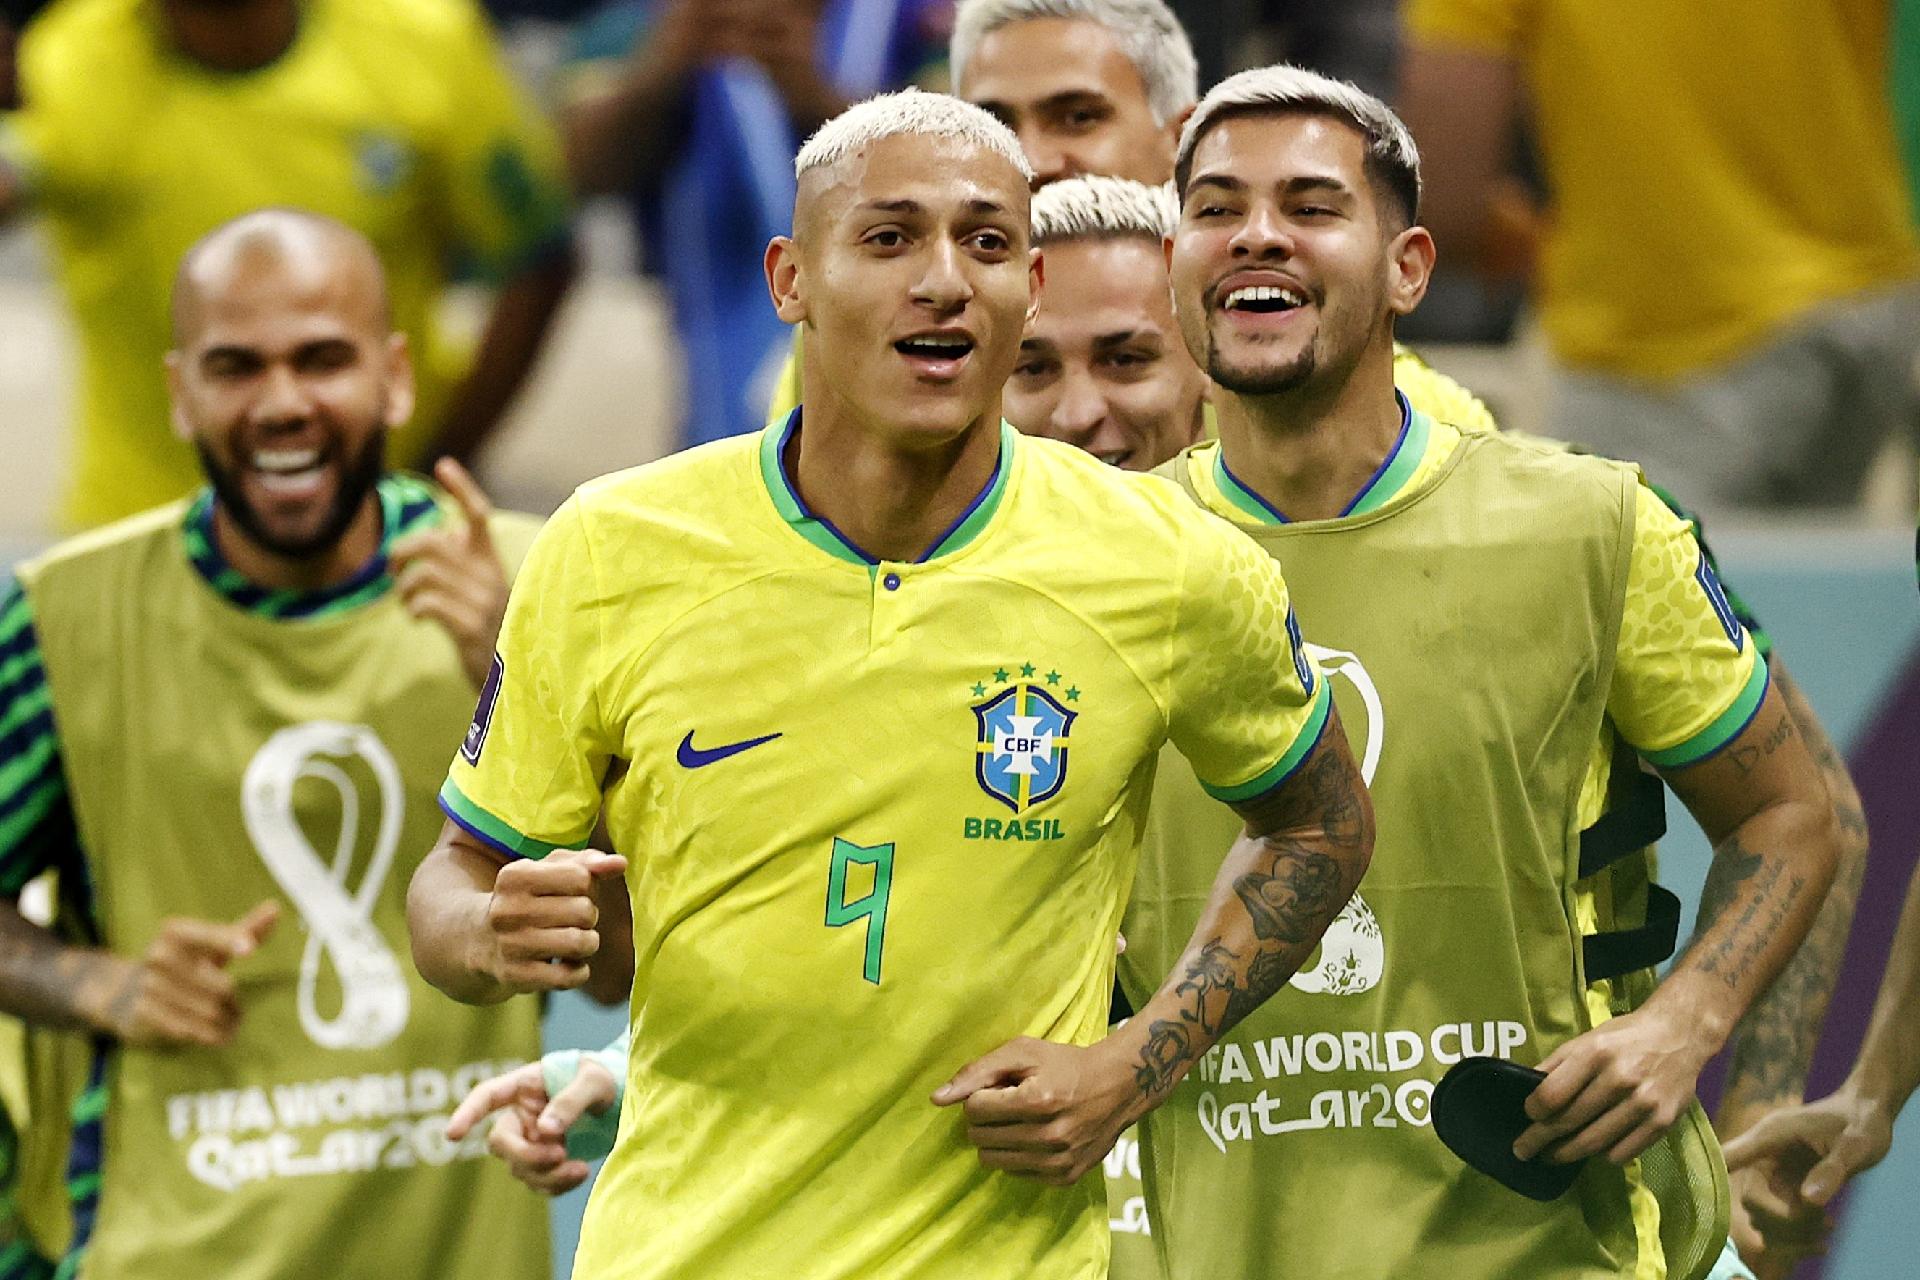 7 músicas para torcer pelo Brasil nessa Copa